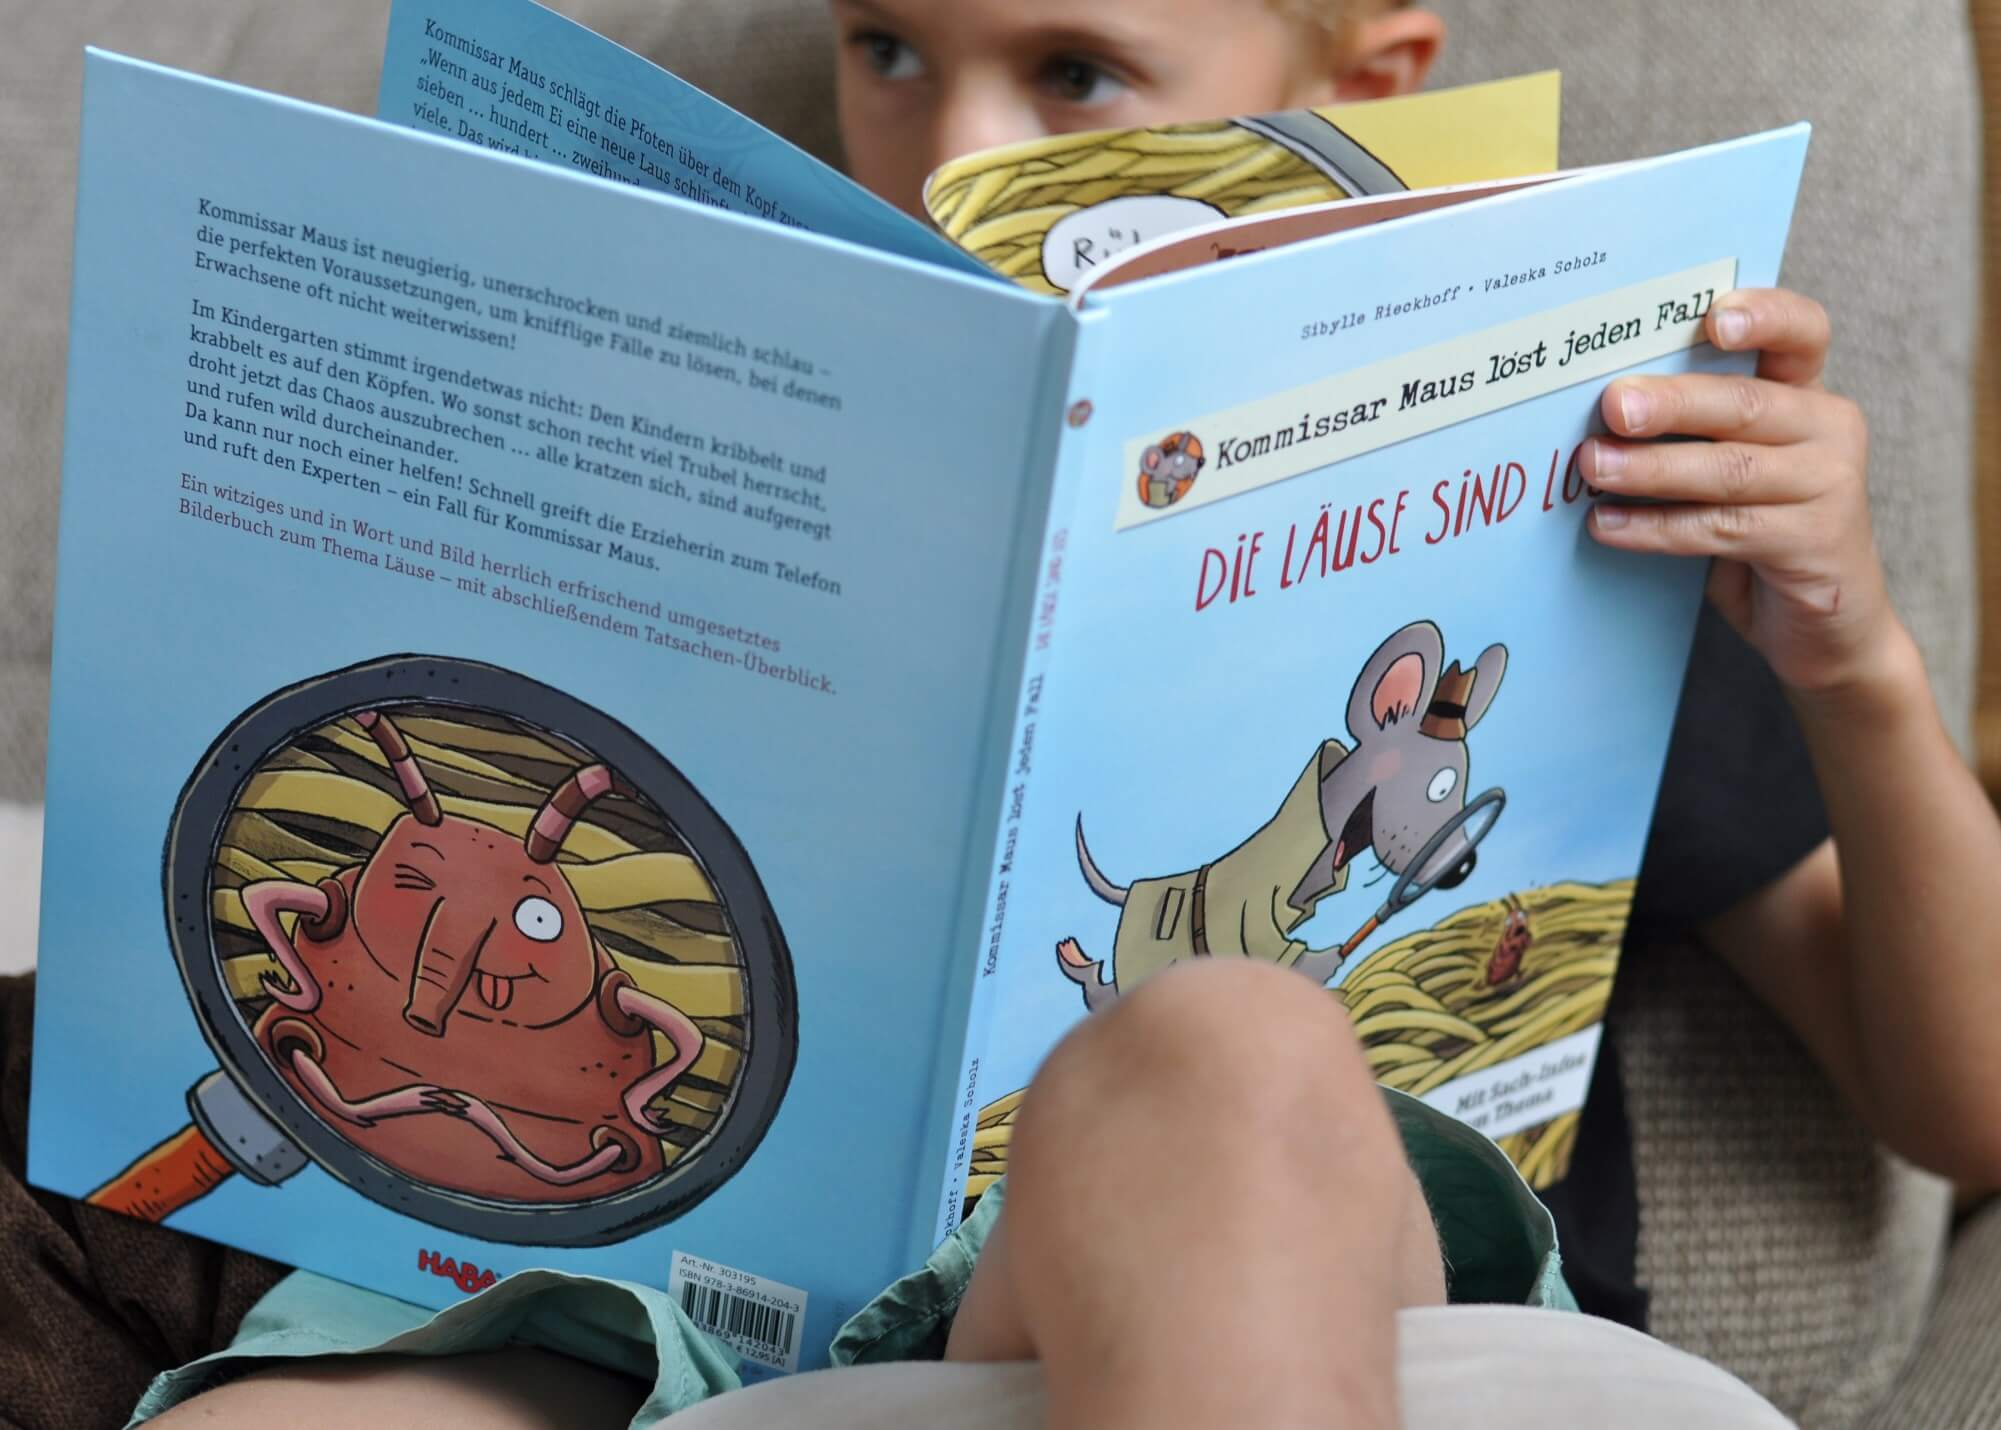 Die Läuse sind los - Ein Sachbilderbuch über Kopfläuse, spannend erklärt #Bidlerbuch #Sachbuch #Läuse #Kopfläuse #vorlsen #Kindergarten